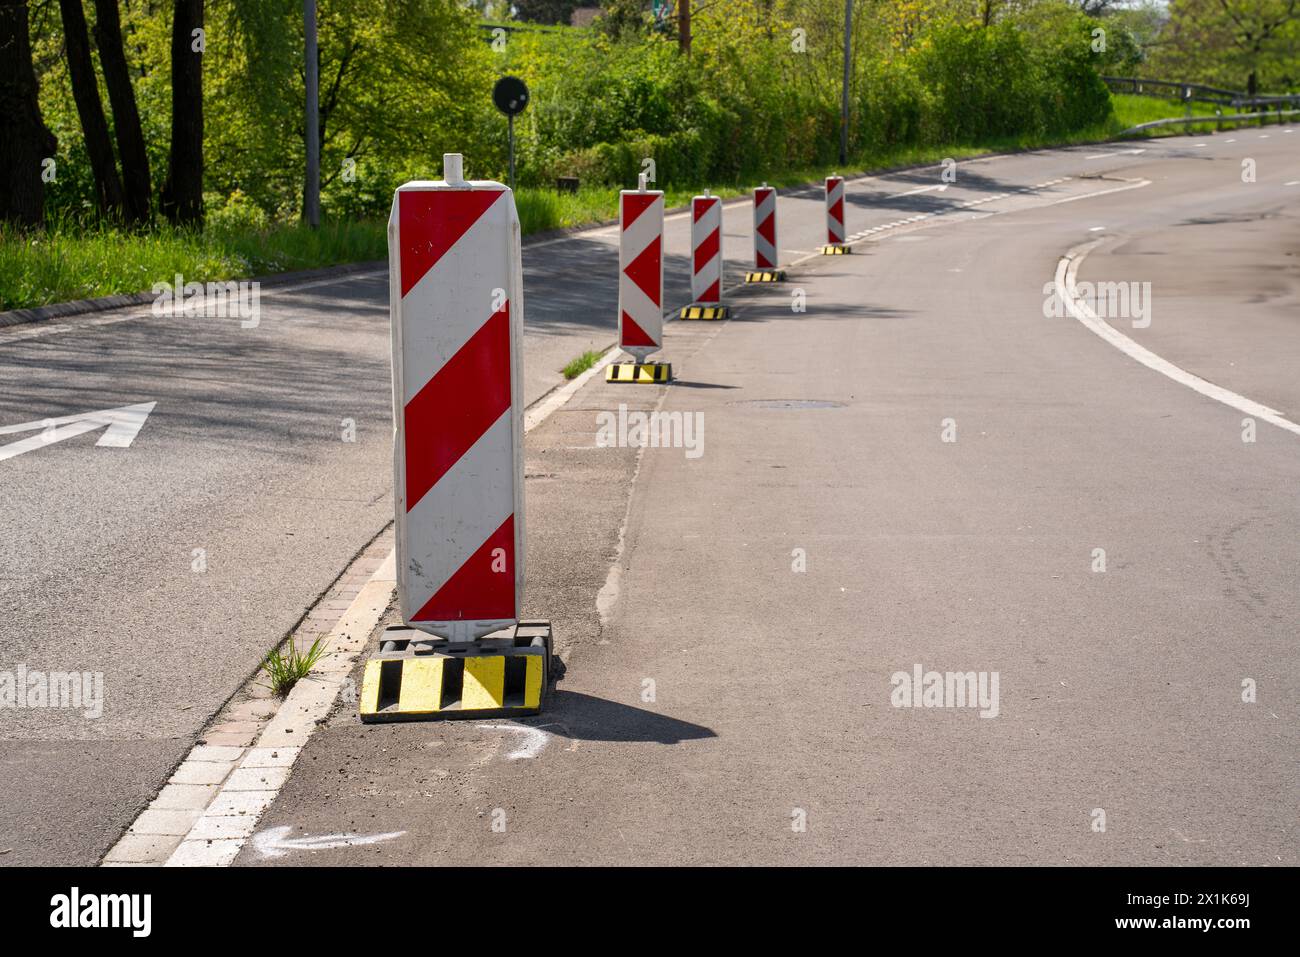 Warnkähne in Rot und Gelb am Straßenrand signalisieren einen Umweg auf einer Baustelle. Stockfoto